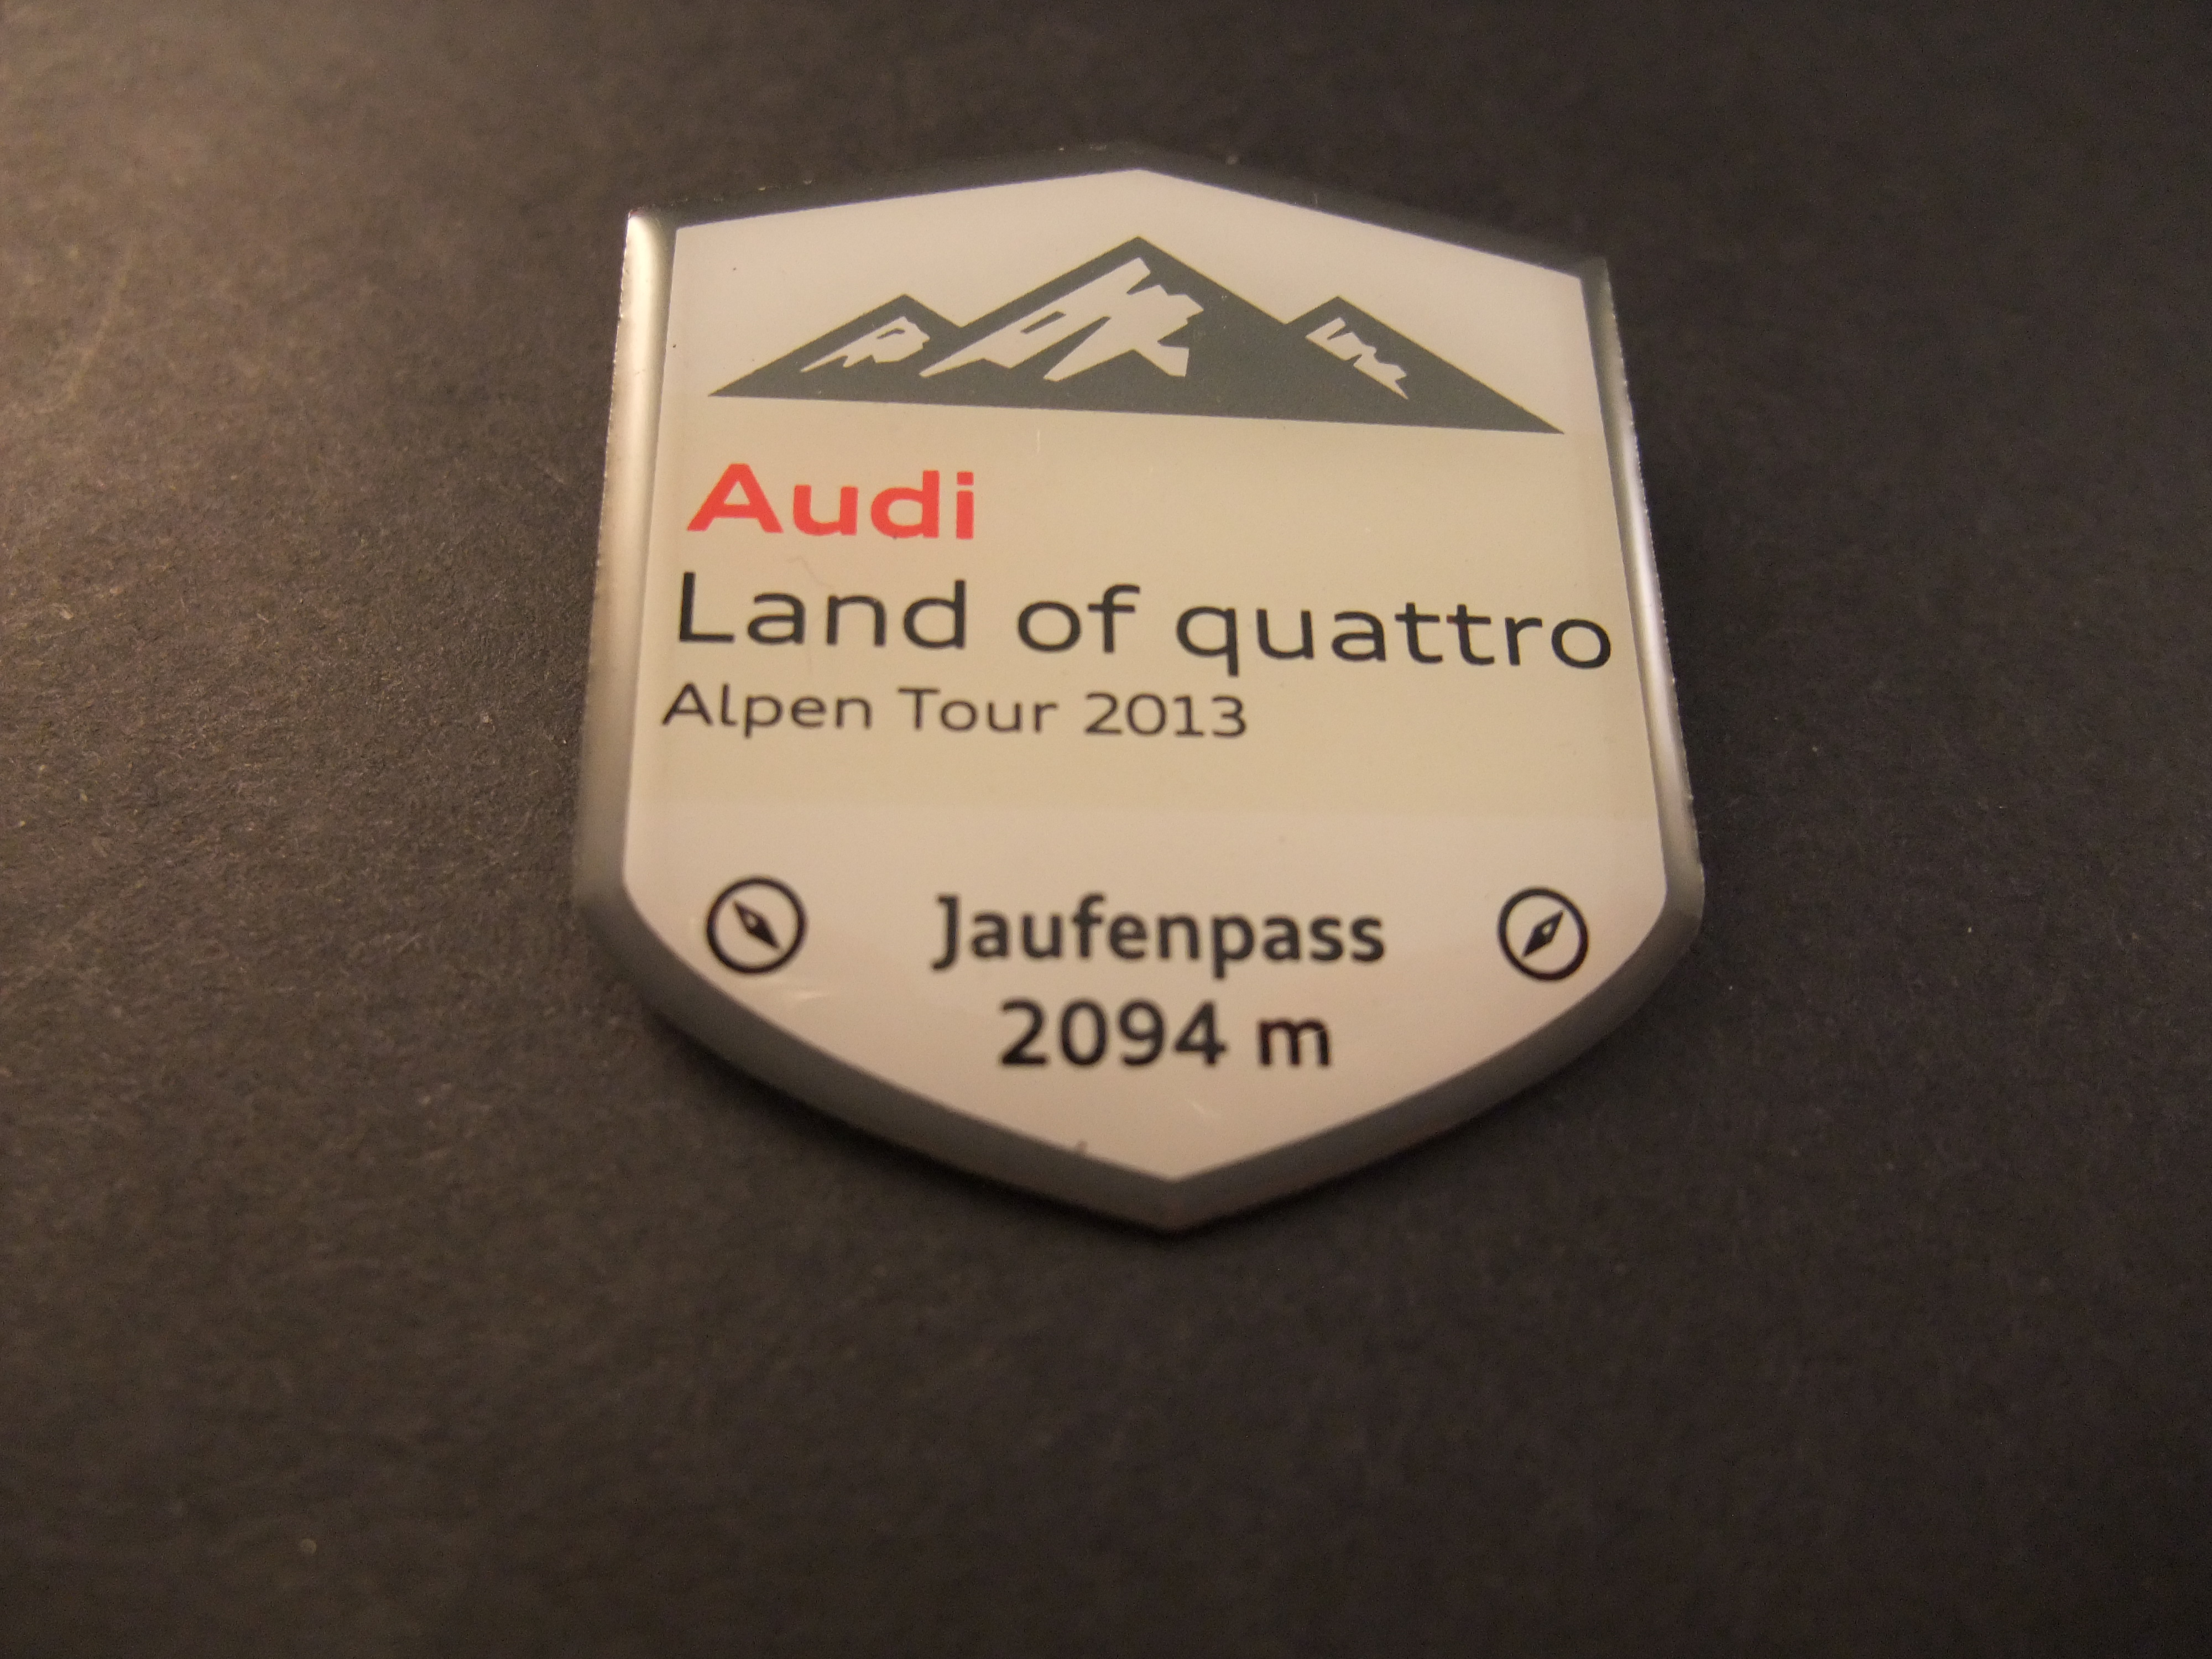 Audi Land of quattro Alpen Tour 2013 ( lange afstandstour  voor de nieuwste Audi RS-modellen Jaufenpass 2094 m